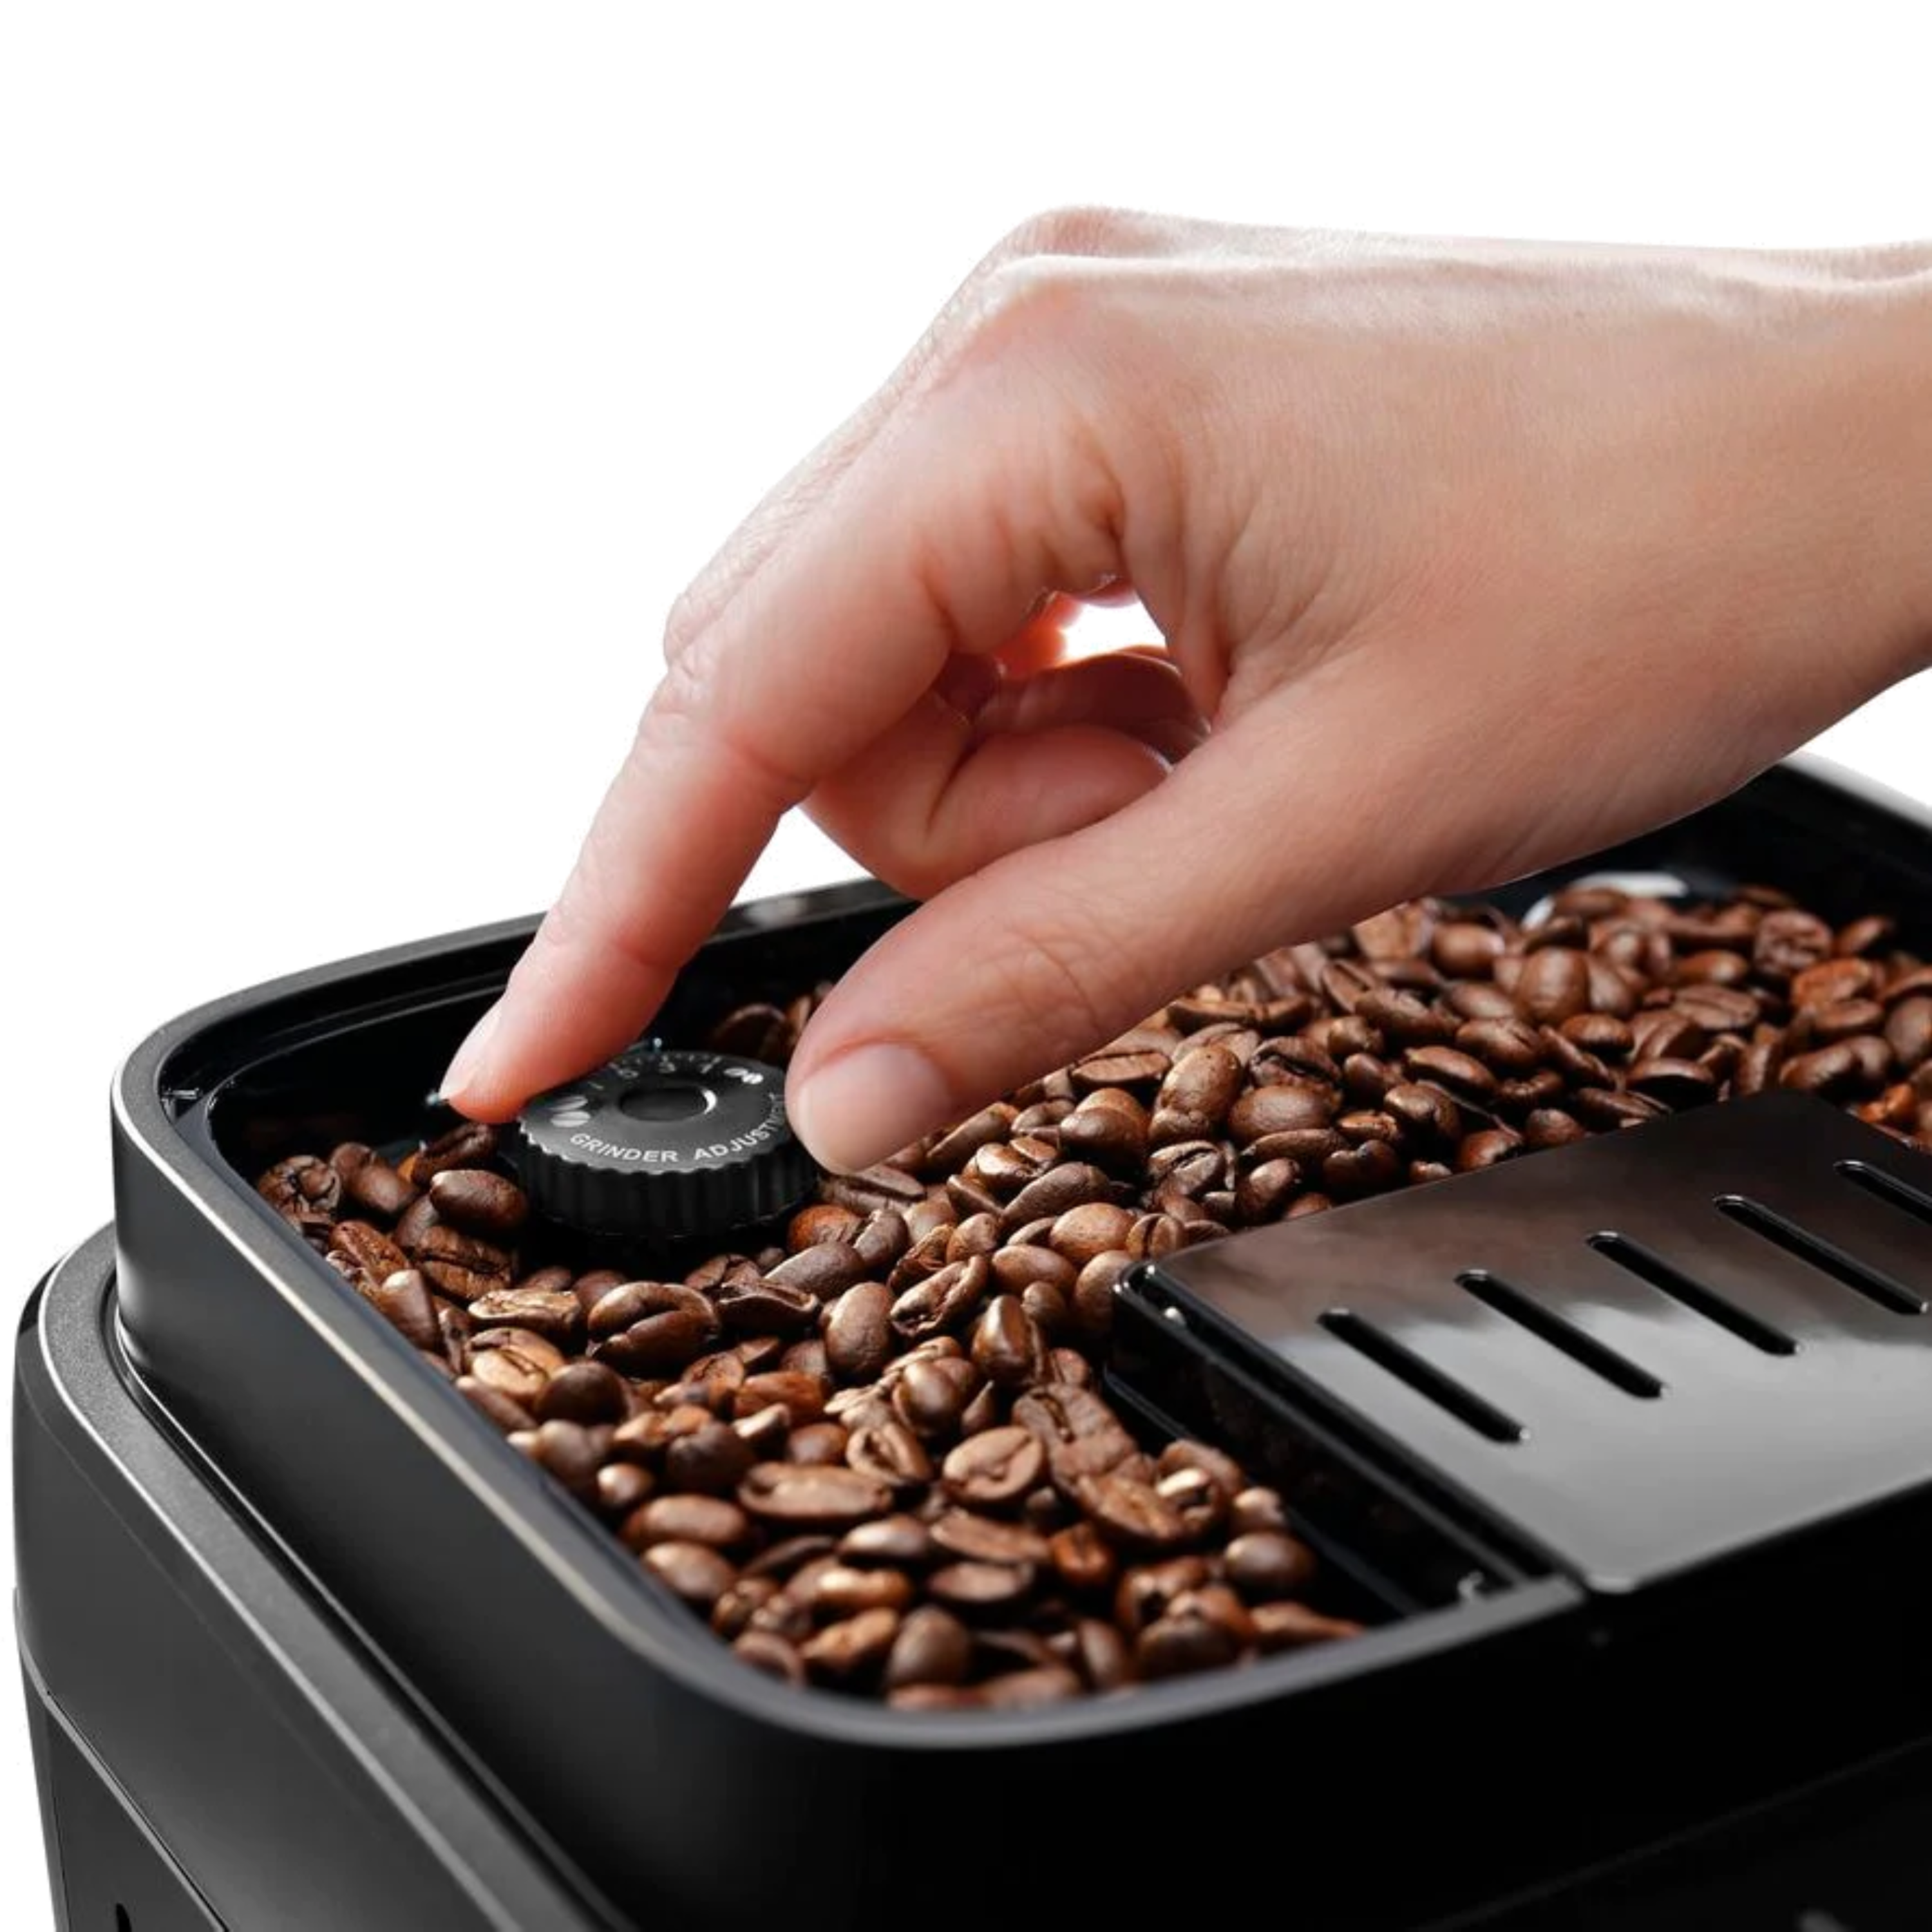 מכונת קפה ECAM290.61.B שחור DELONGHI